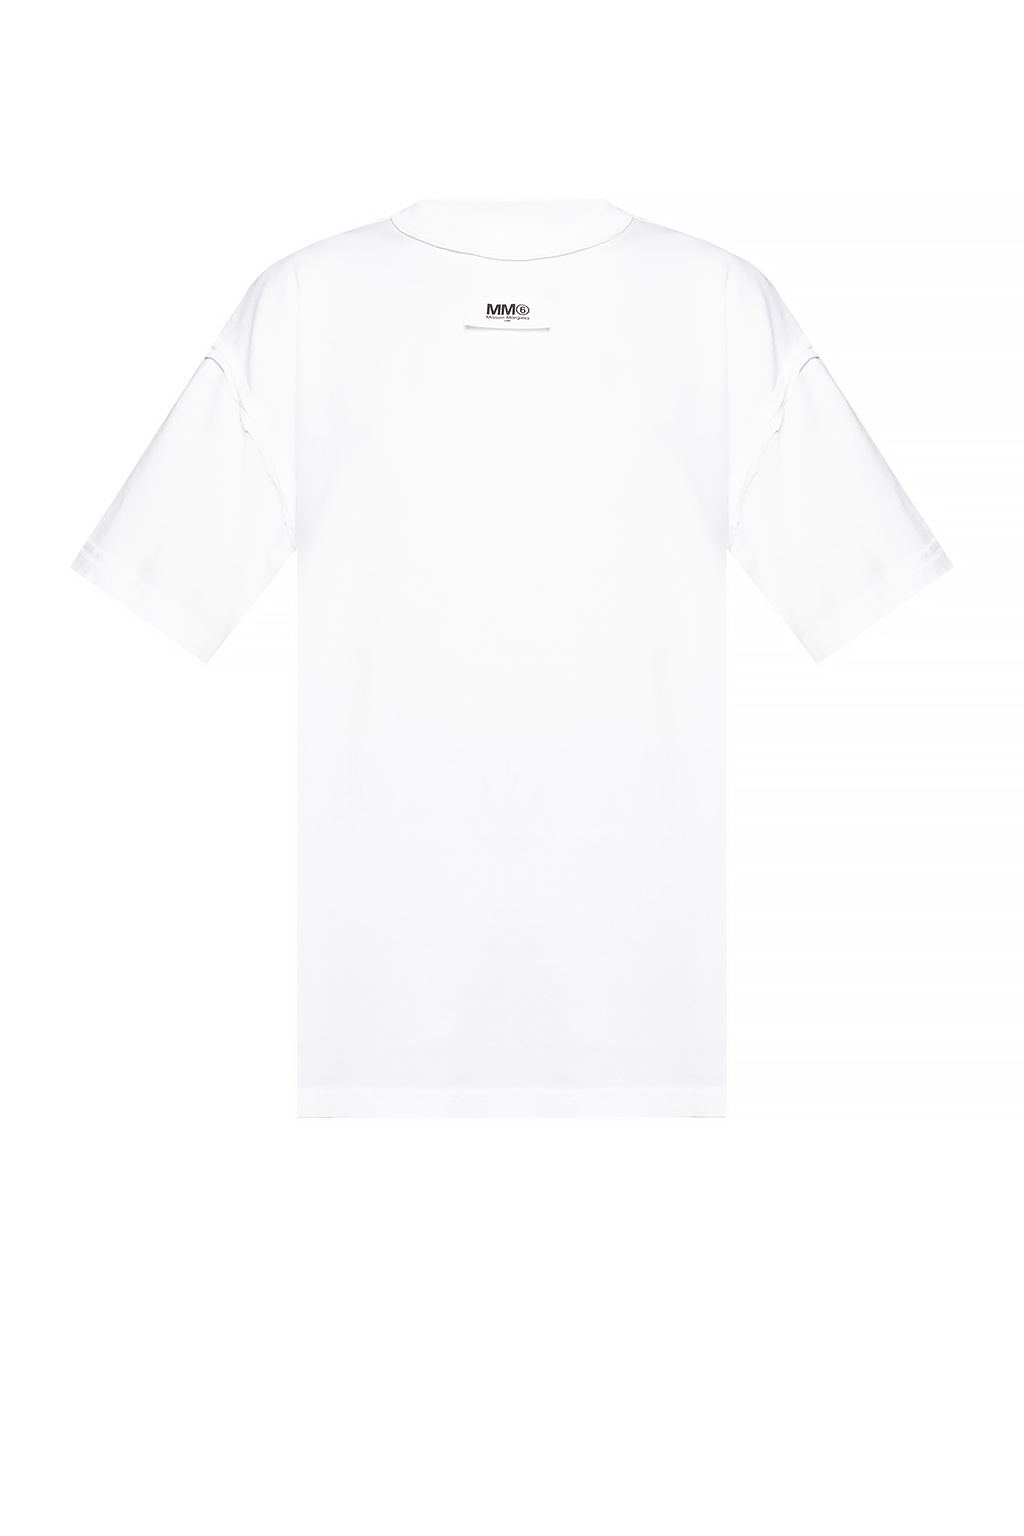 Vans Era 59 CA Dress Shirt Camo New Release Logo T-shirt